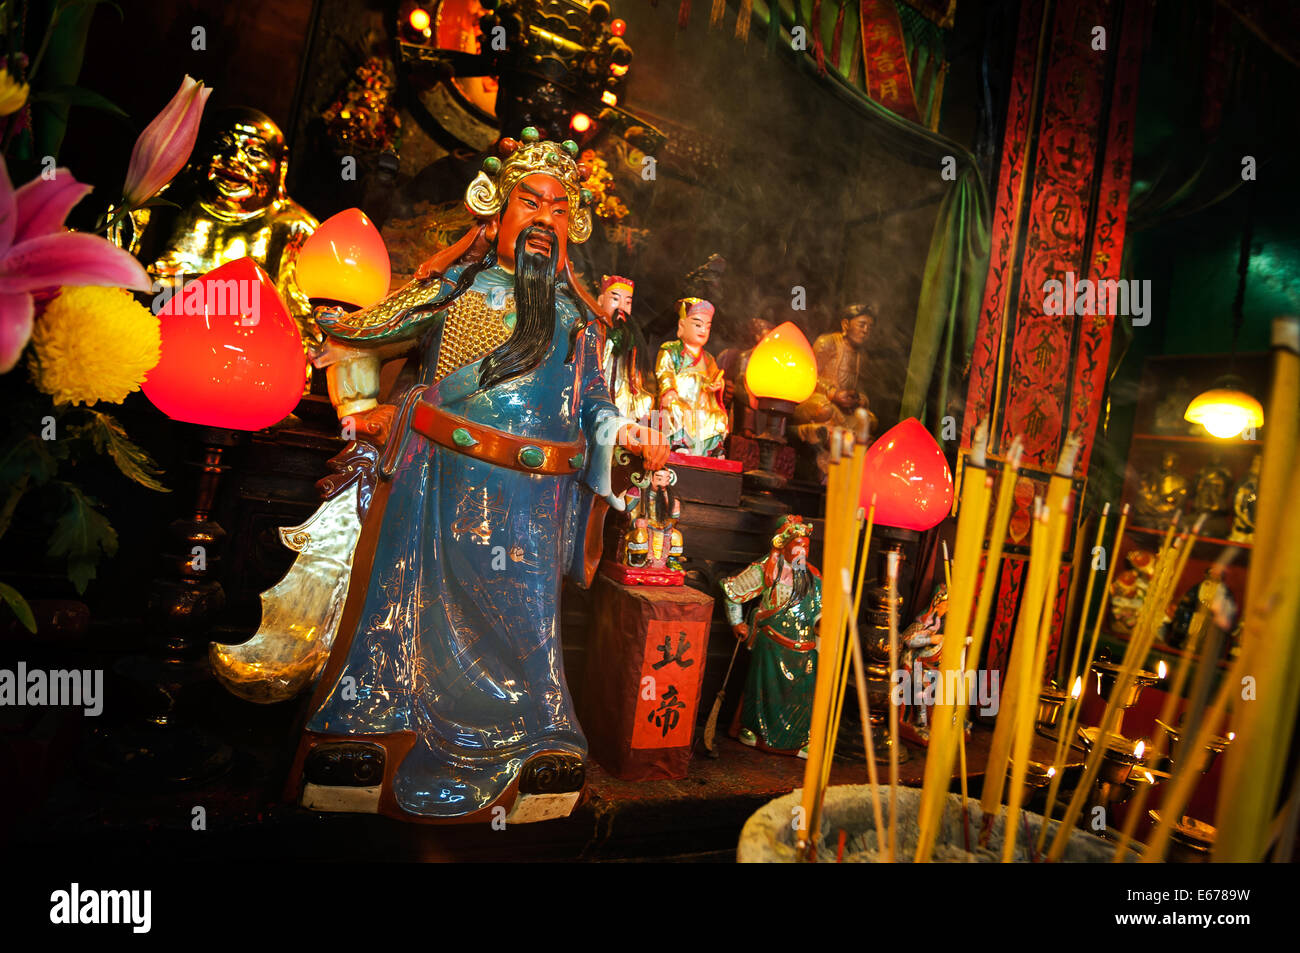 Chinois populaires dieu guan yu à la tin hau temple dans ya ma tei, hong kong Banque D'Images